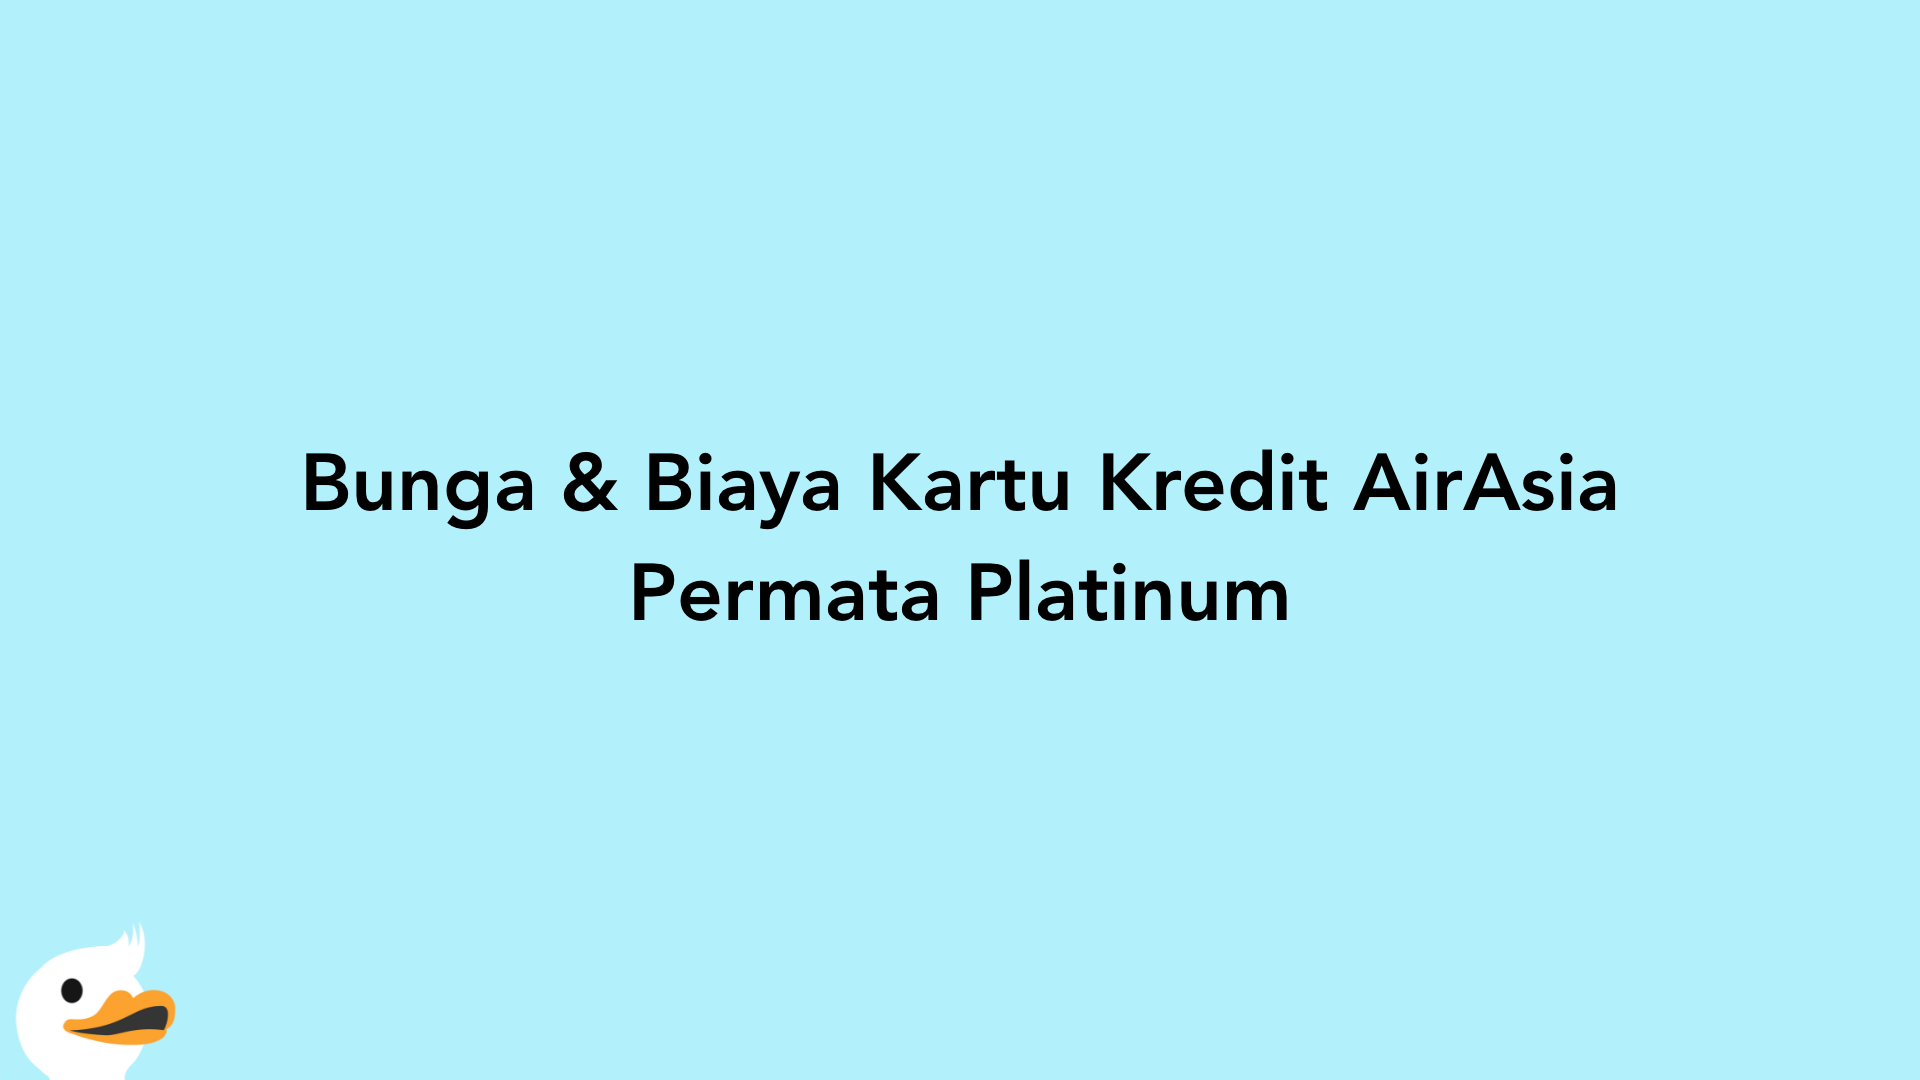 Bunga & Biaya Kartu Kredit AirAsia Permata Platinum